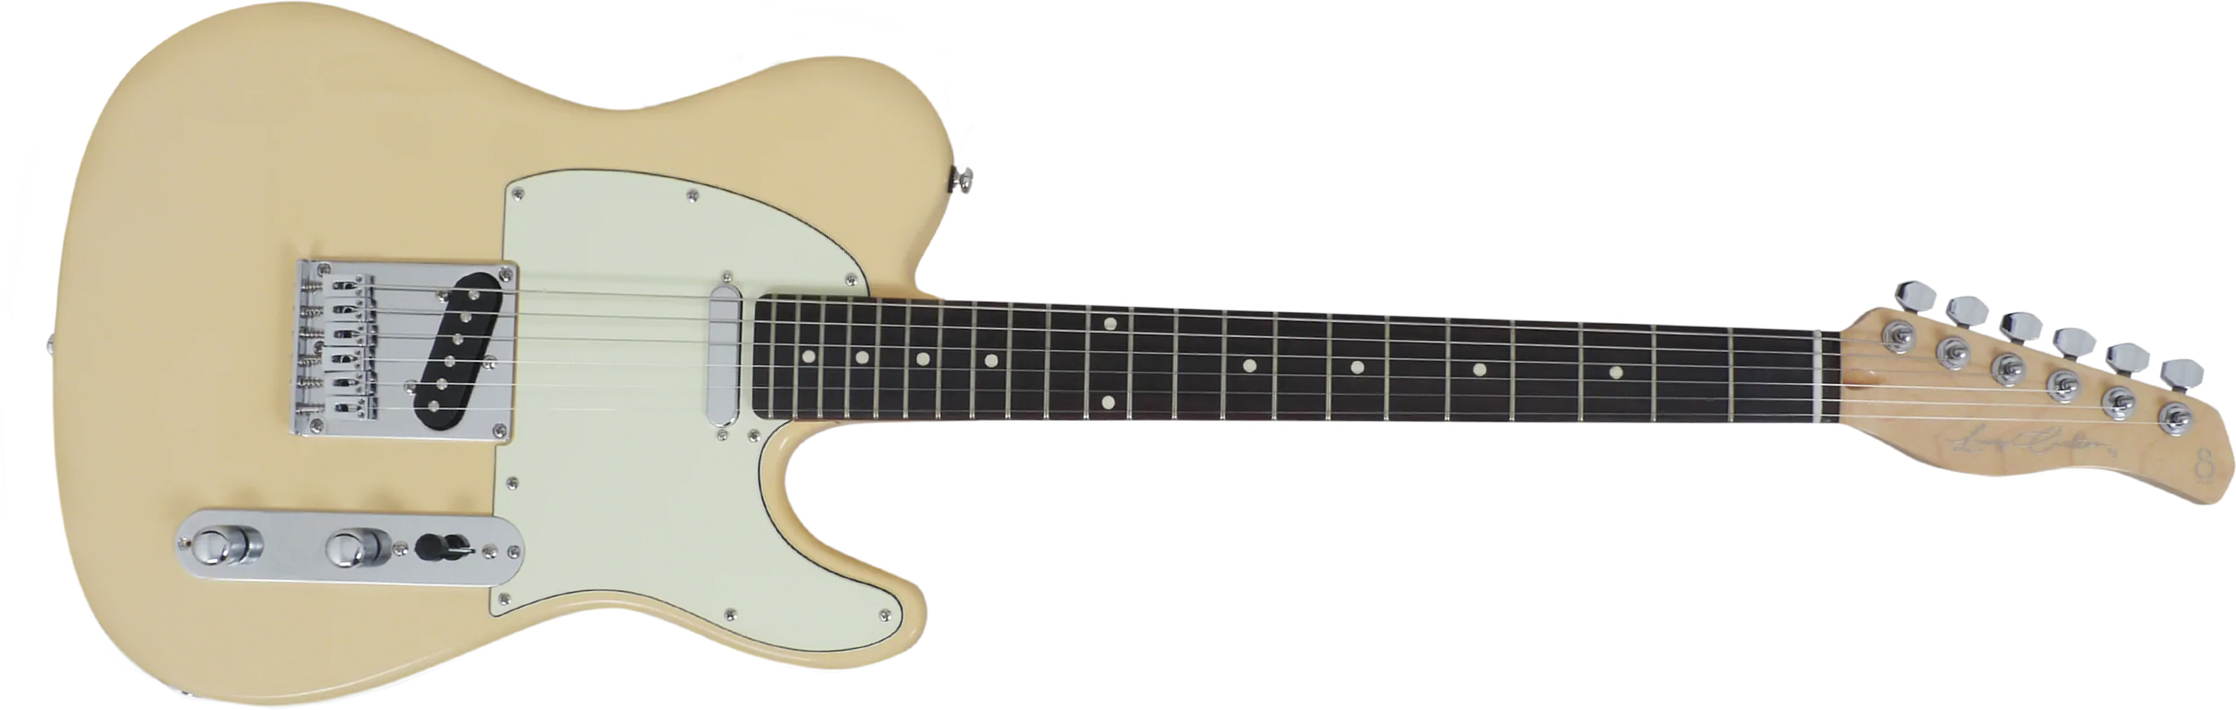 Sire Larry Carlton T3 Signature 2s Ht Rw - Vintage White - E-Gitarre in Teleform - Main picture